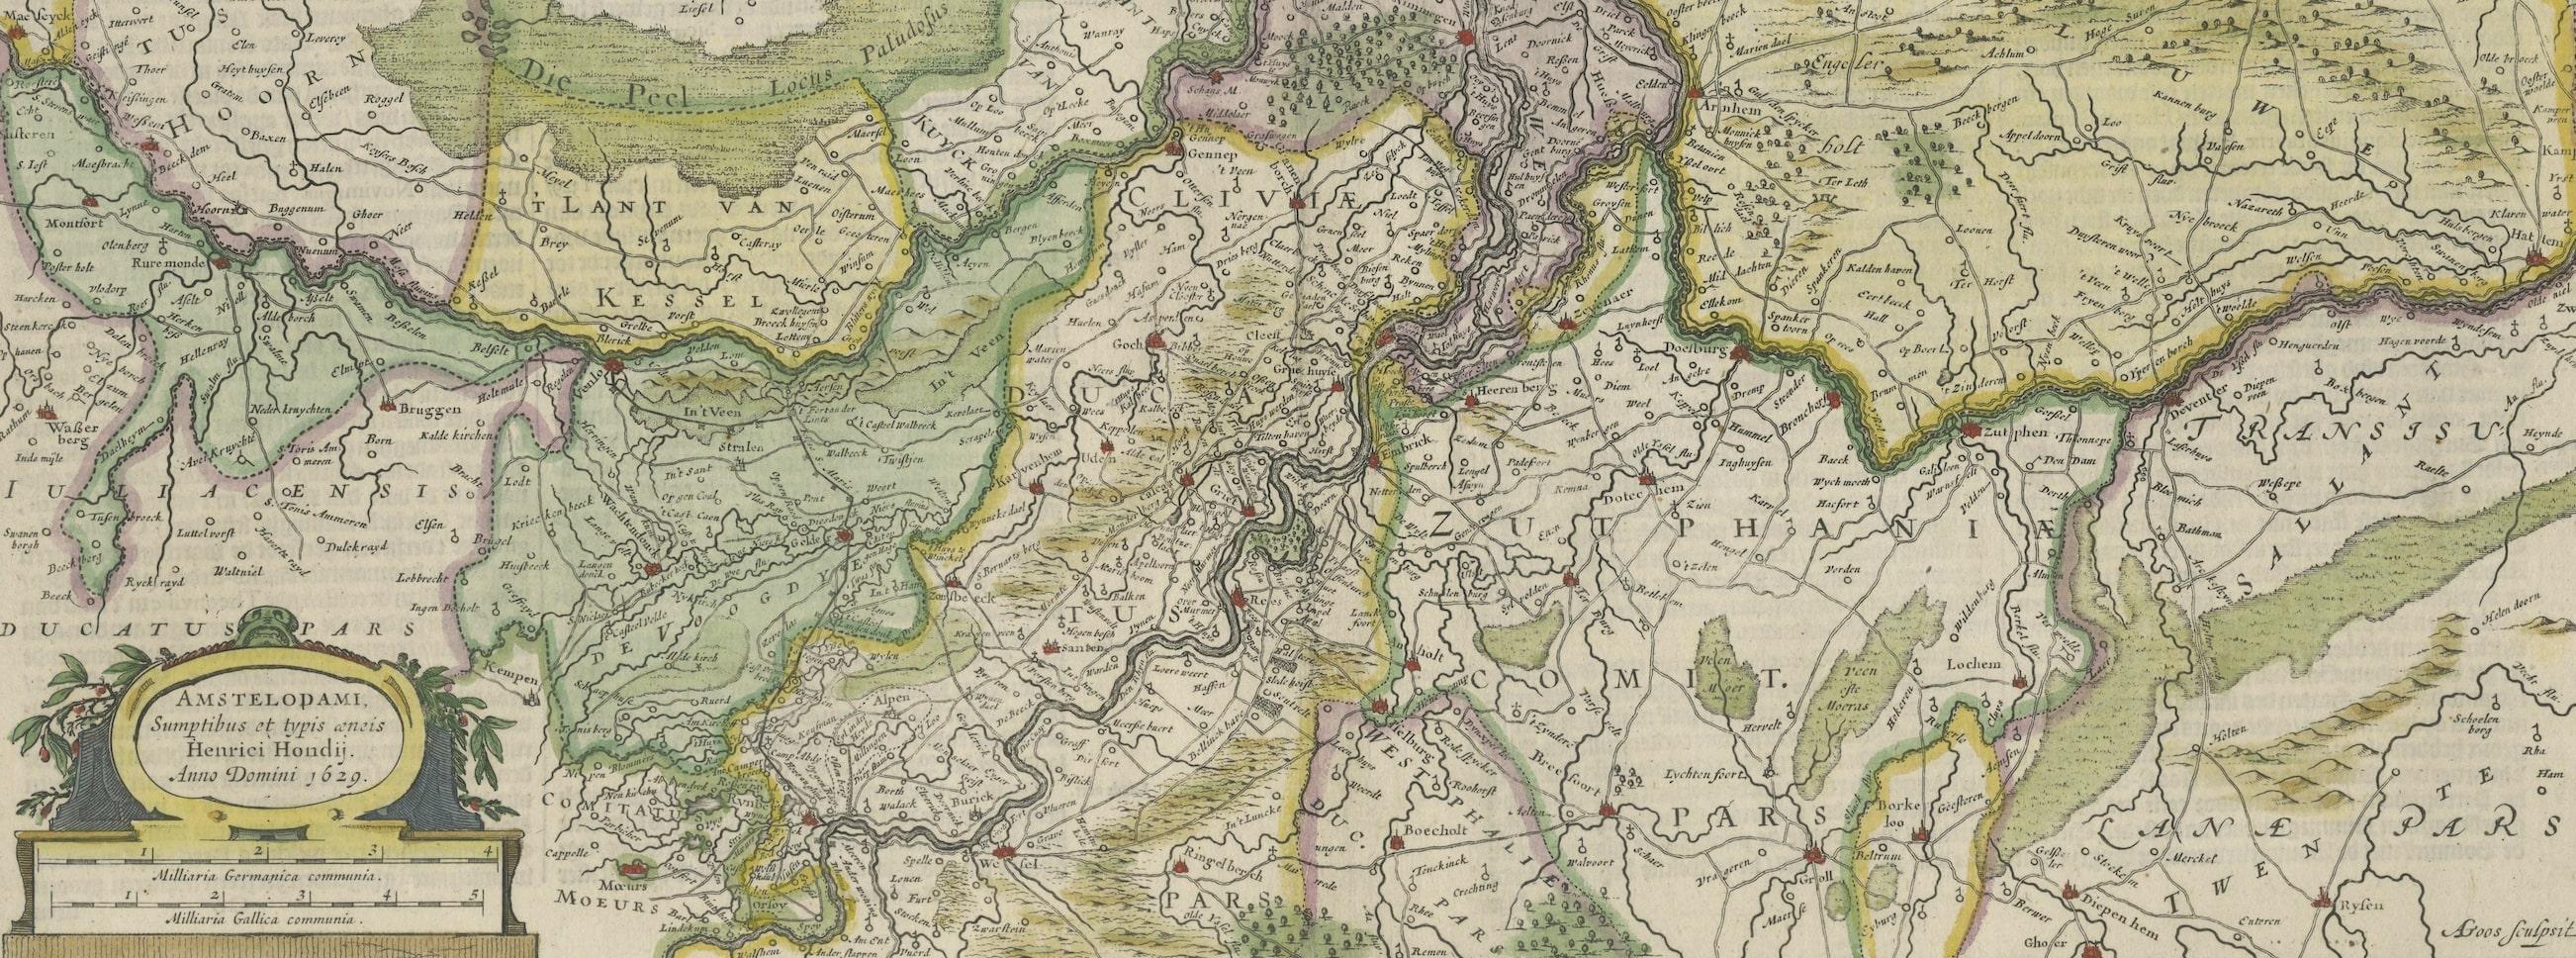 gelderland netherlands map